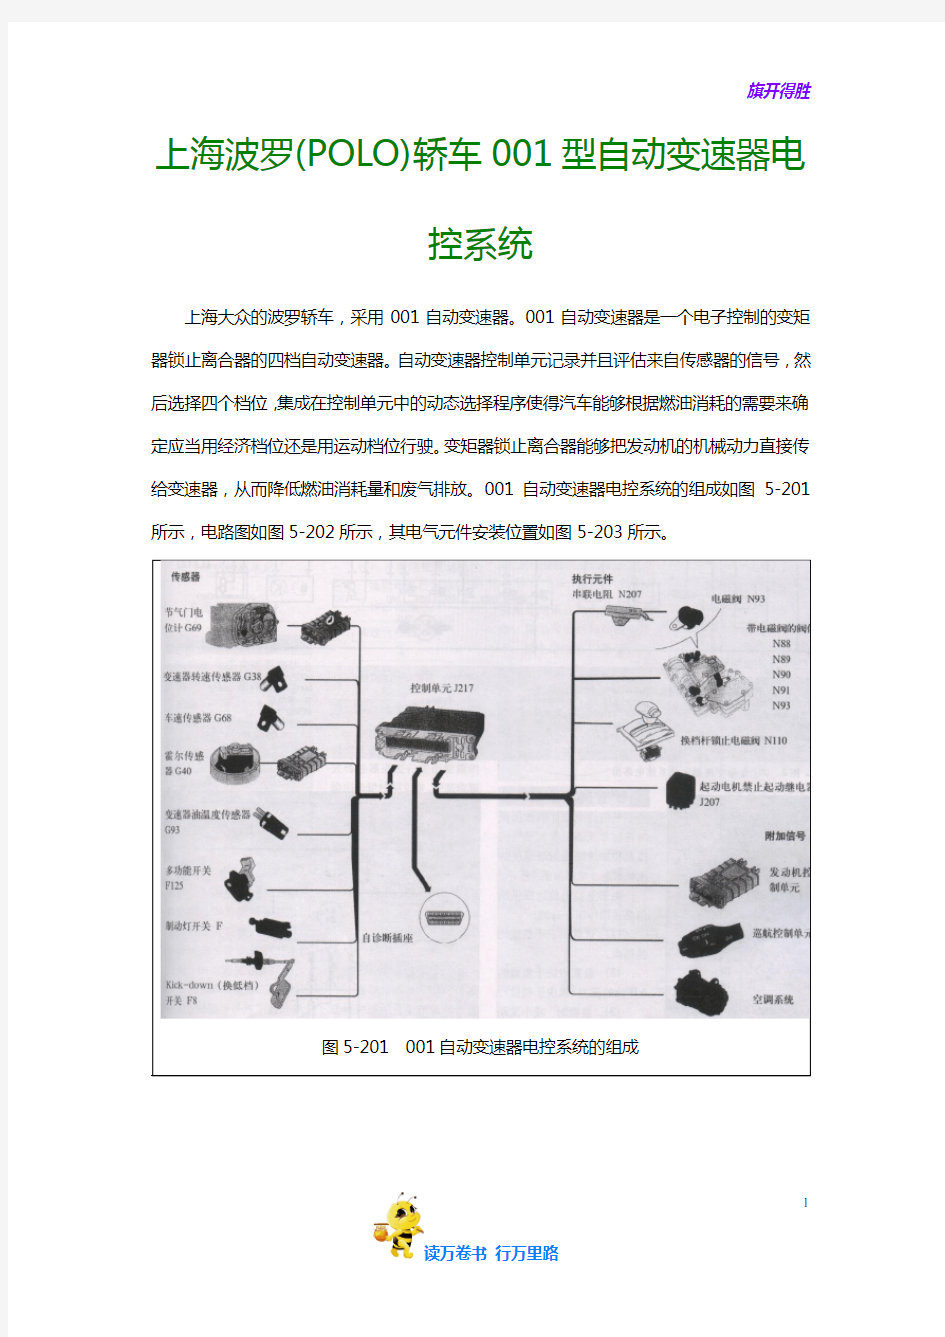 【大众】上海波罗(POLO)轿车001型自动变速器电控系统